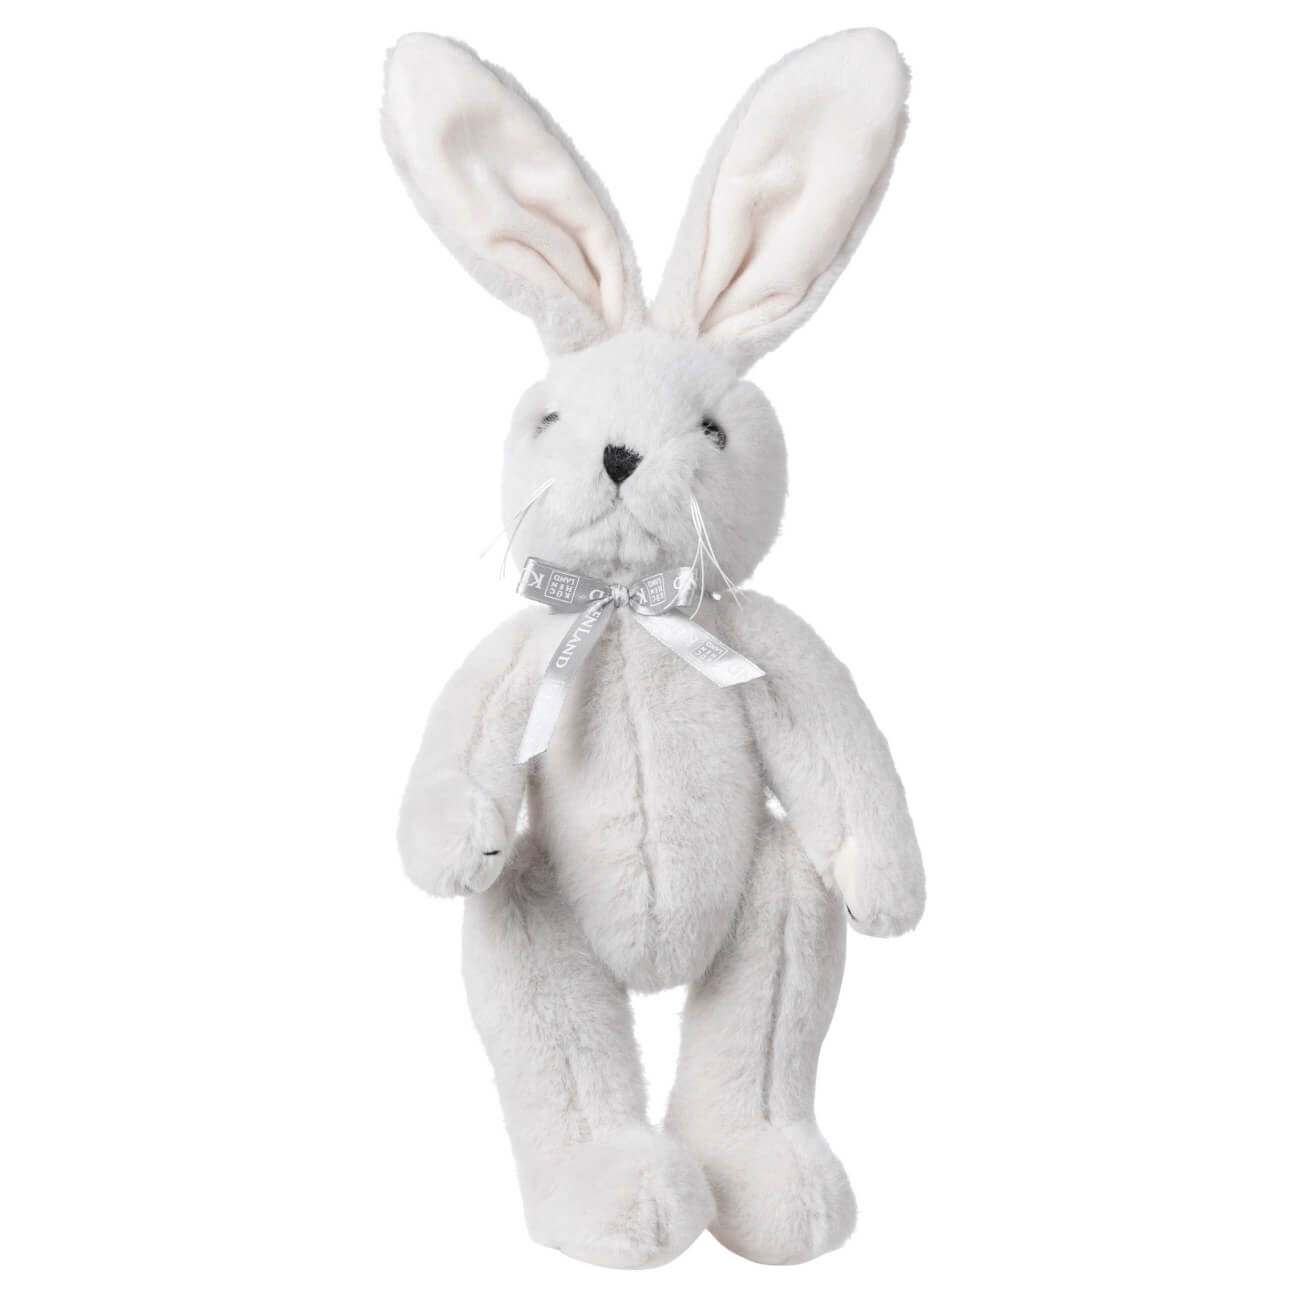 Игрушка, 30 см, мягкая, с подвижными лапами, полиэстер, светло-серая, Кролик, Rabbit toy мягкая игрушка мишка ронни в пальто 21 см